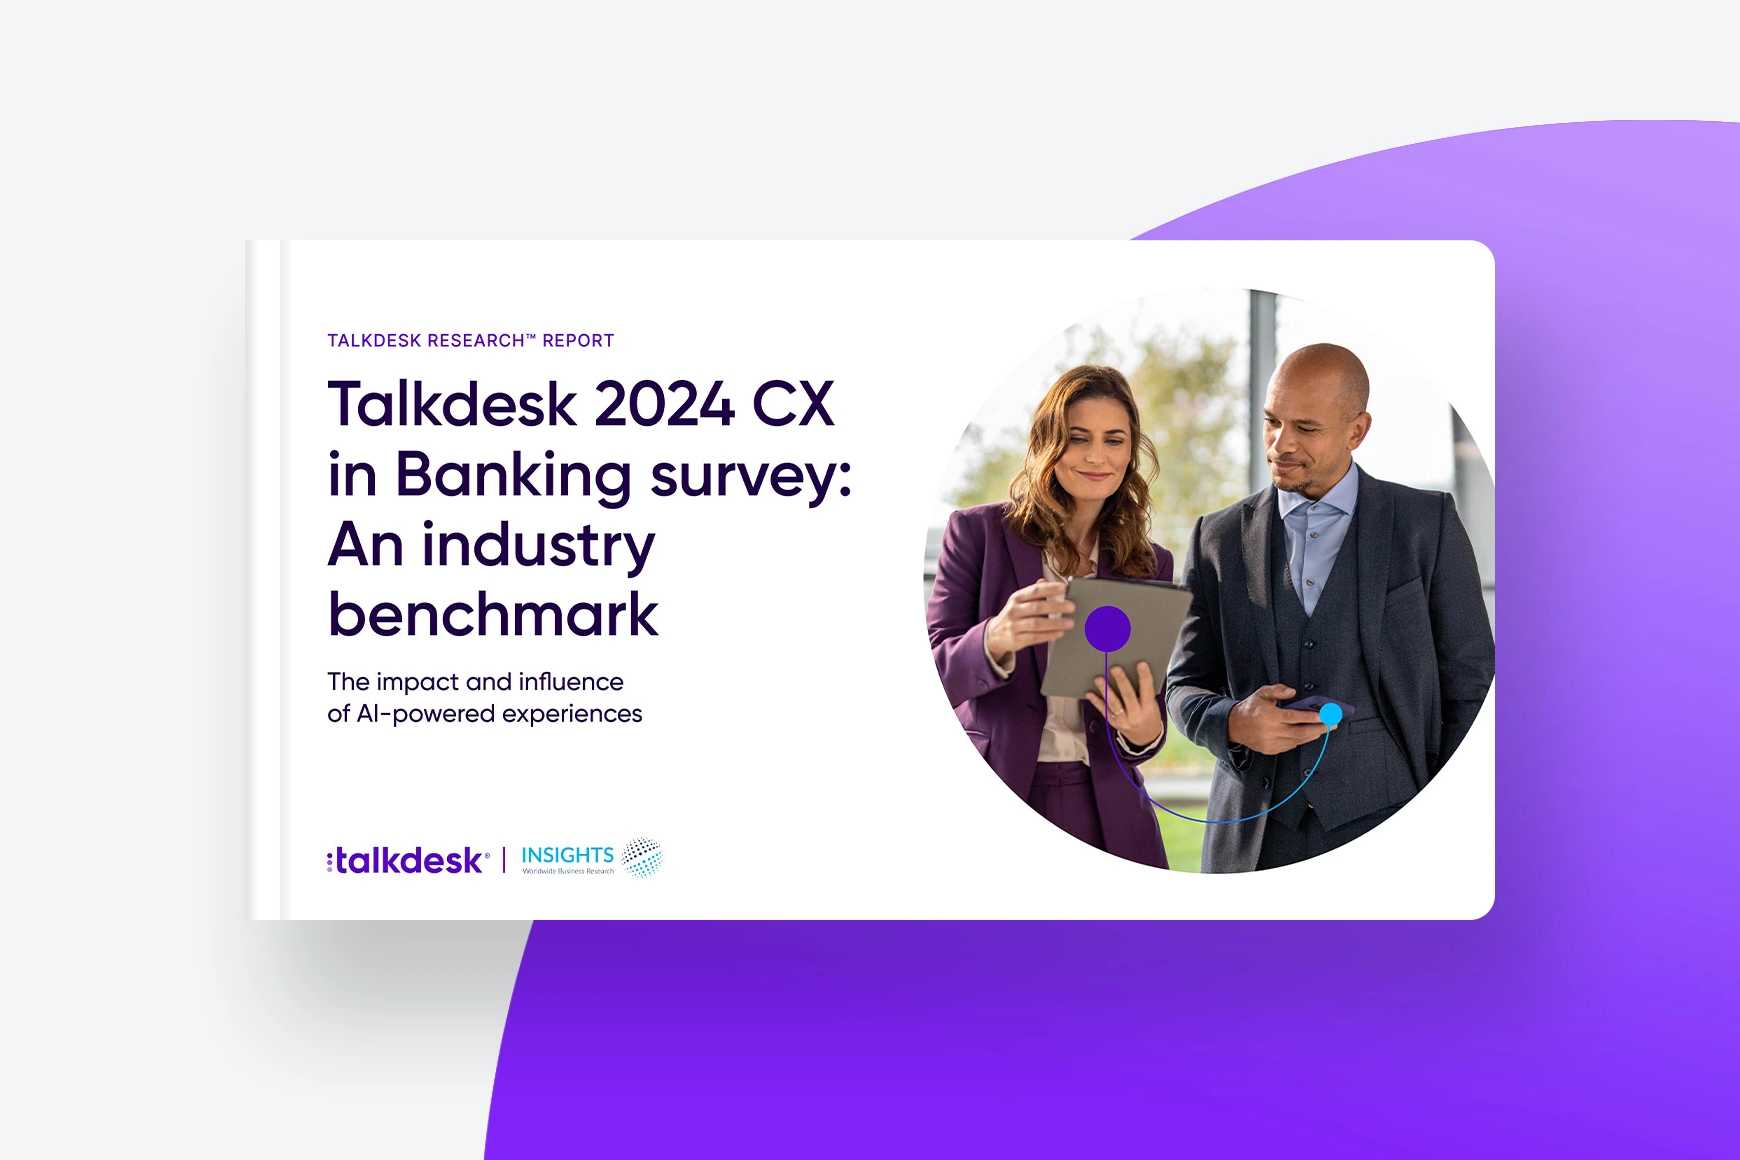 Pesquisa Talkdesk sobre CX no setor bancário de 2024: uma referência do setor